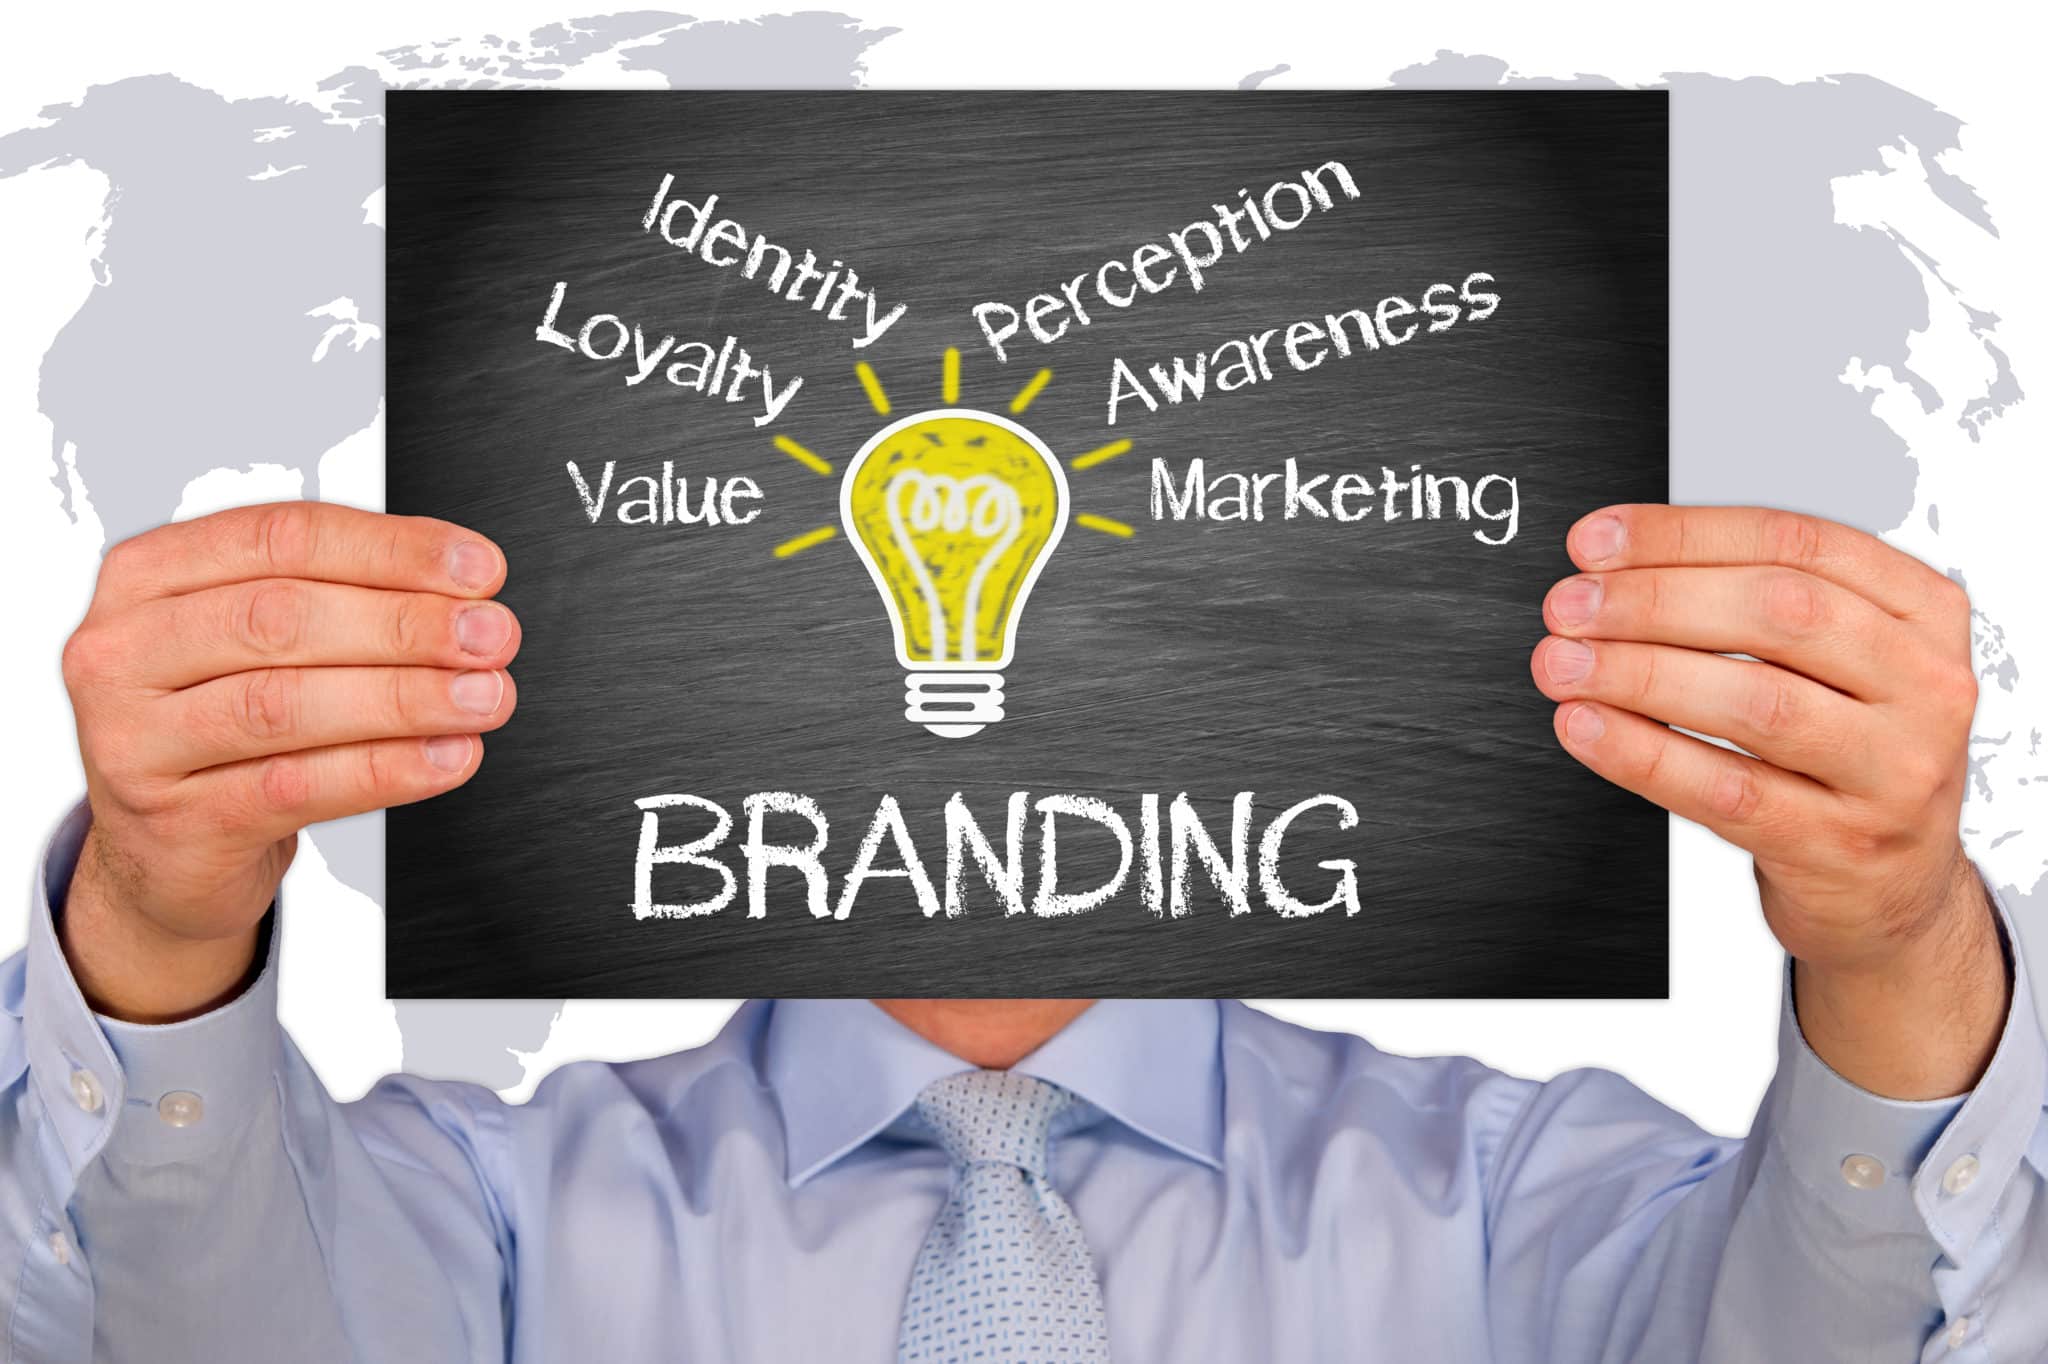 social media marketing benefits - branding
